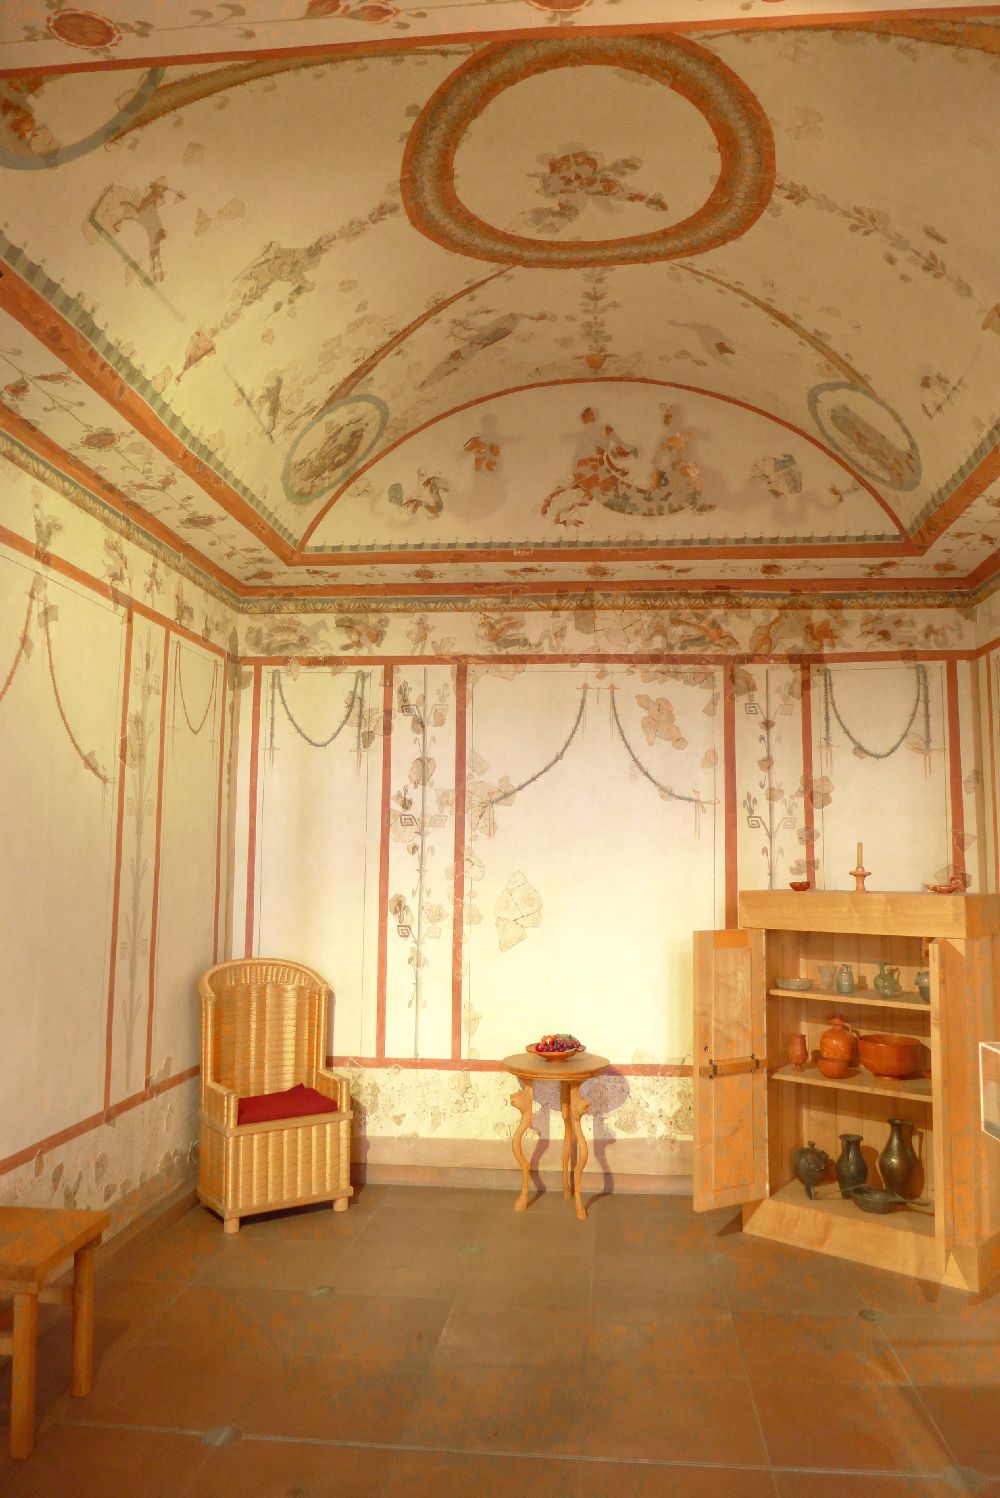 Ein Raum mit Floraler Wandmalerei. Ind er ecke steht ein Korbstuhl, im der anderen Ecke ein Bücherregal.